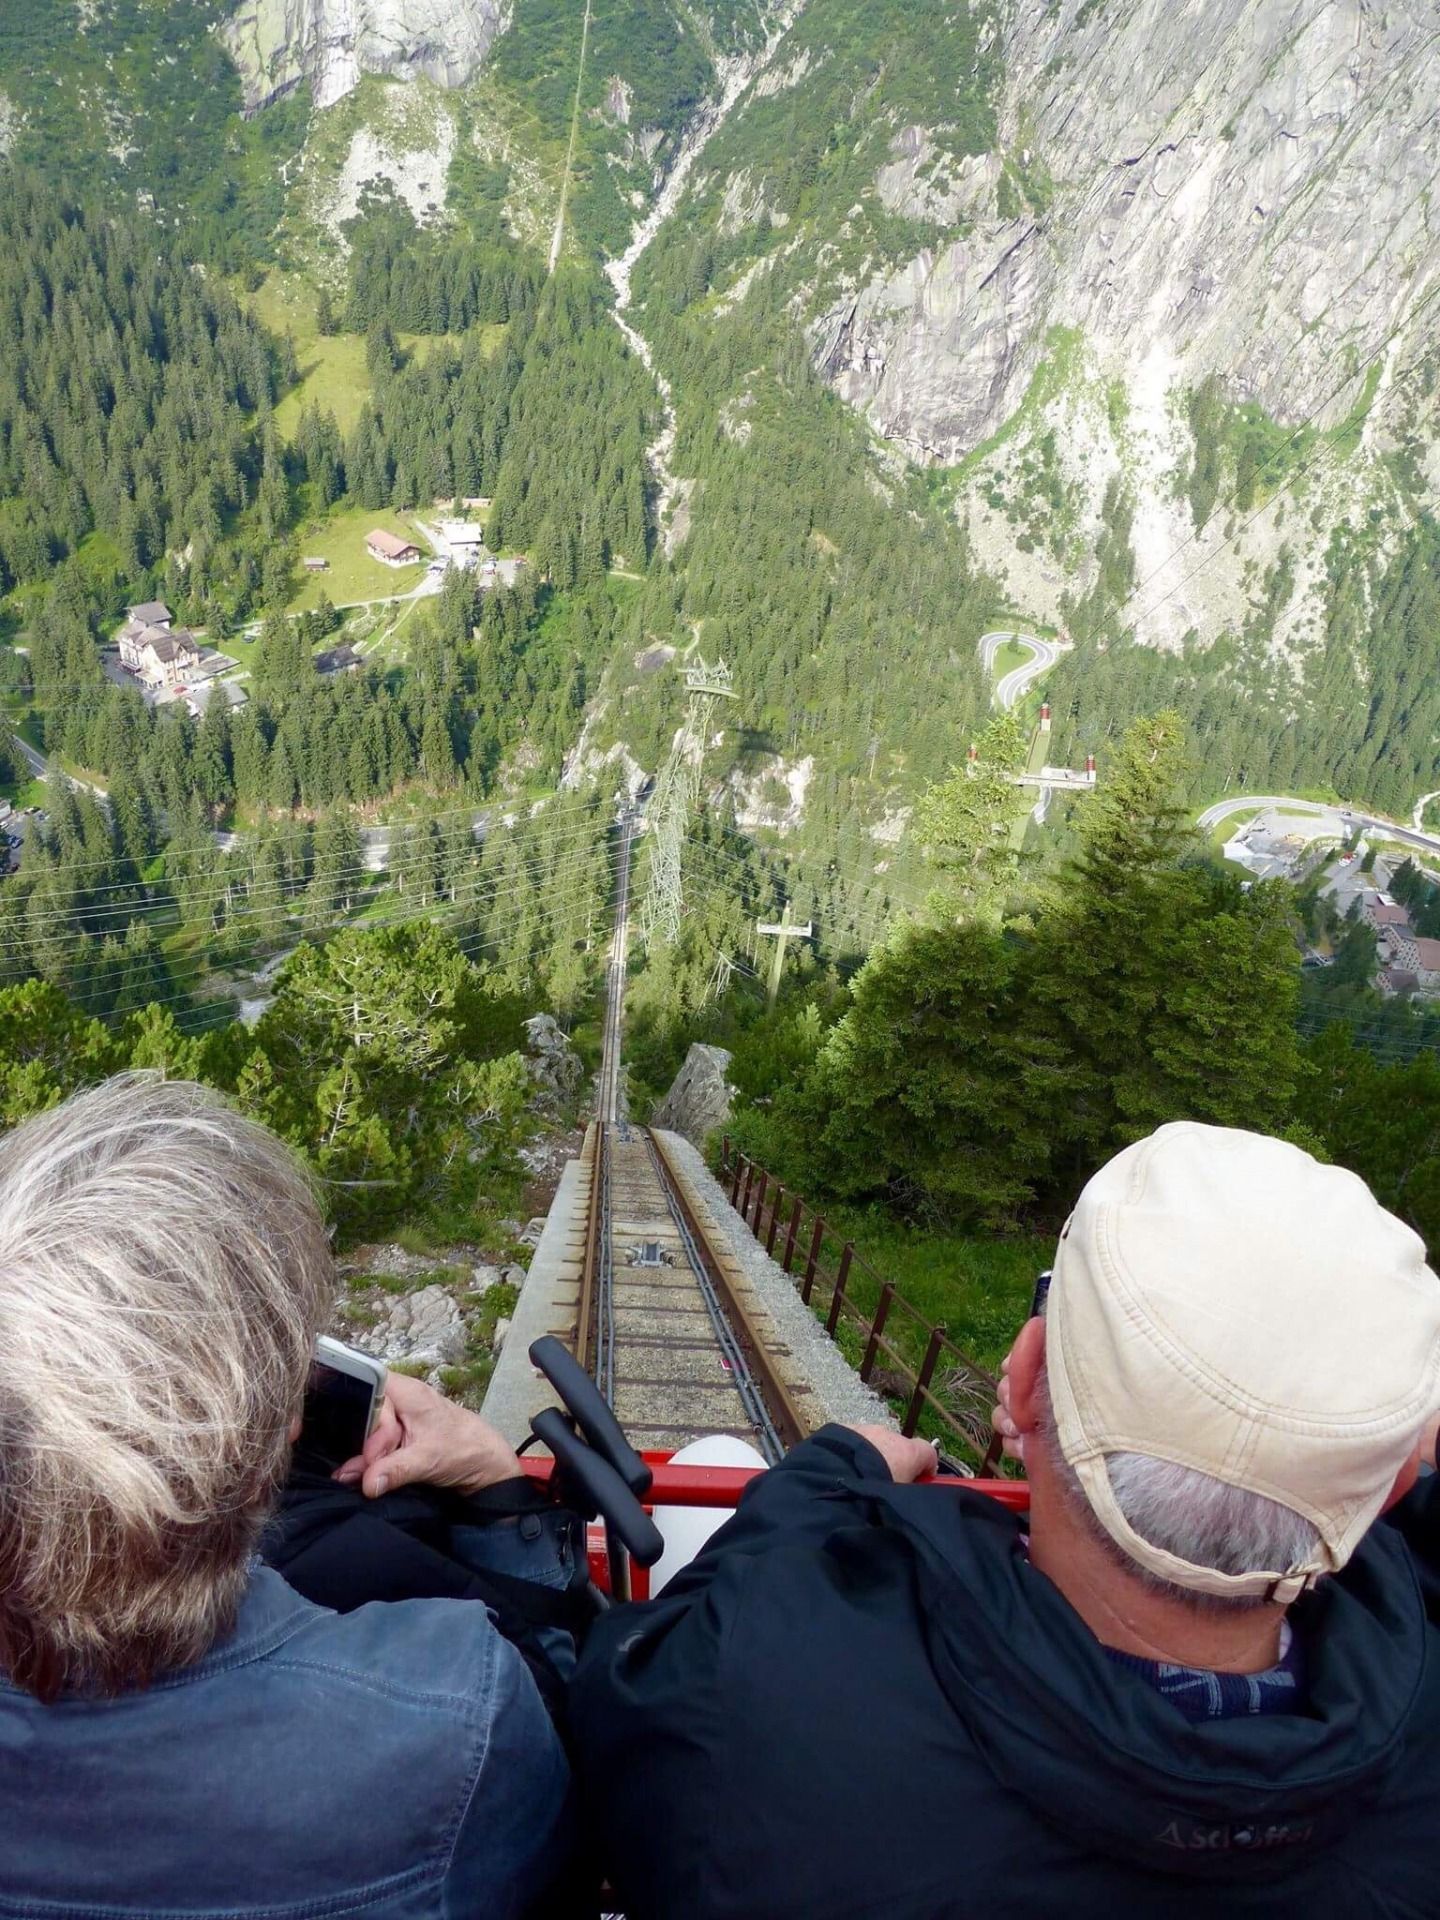 60 Things To Do This Summer Around Interlaken, Switzerland